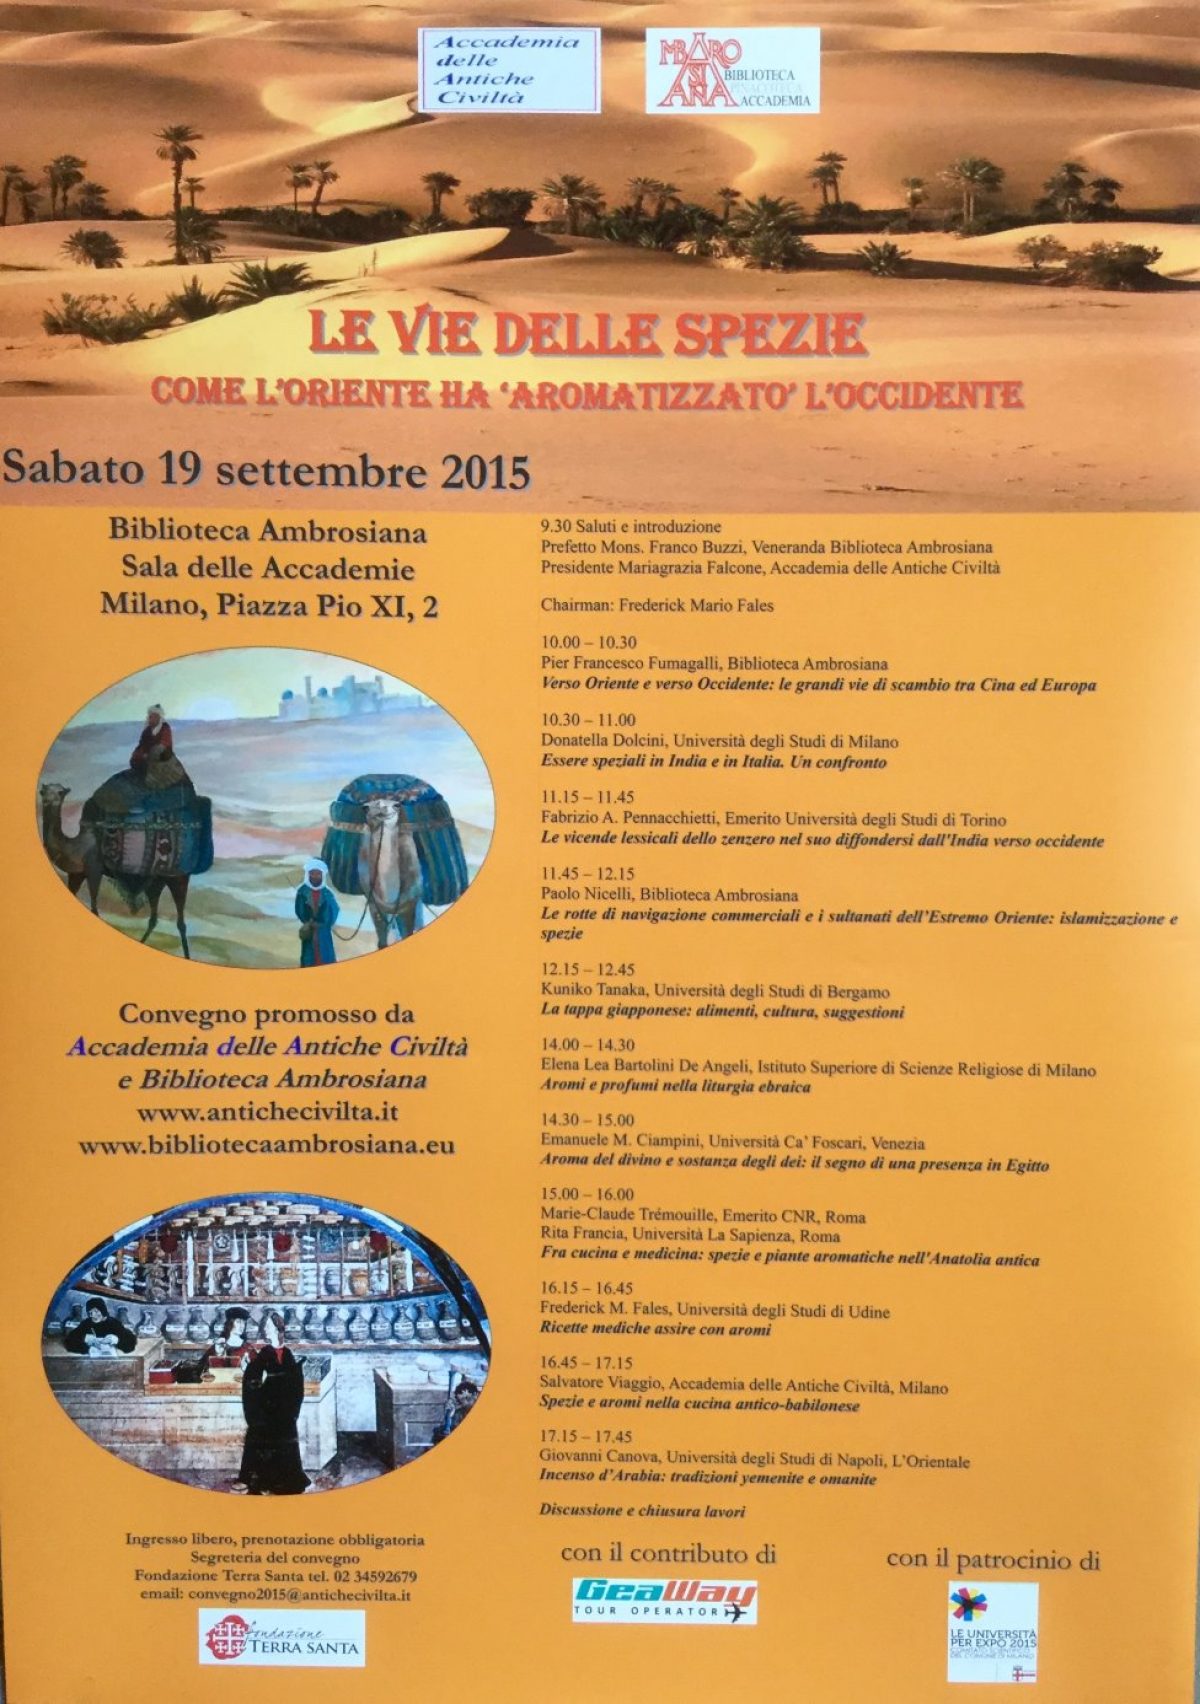 EVFENTI: Convegno dell’accademia delle antiche civilita’, settembre 2015